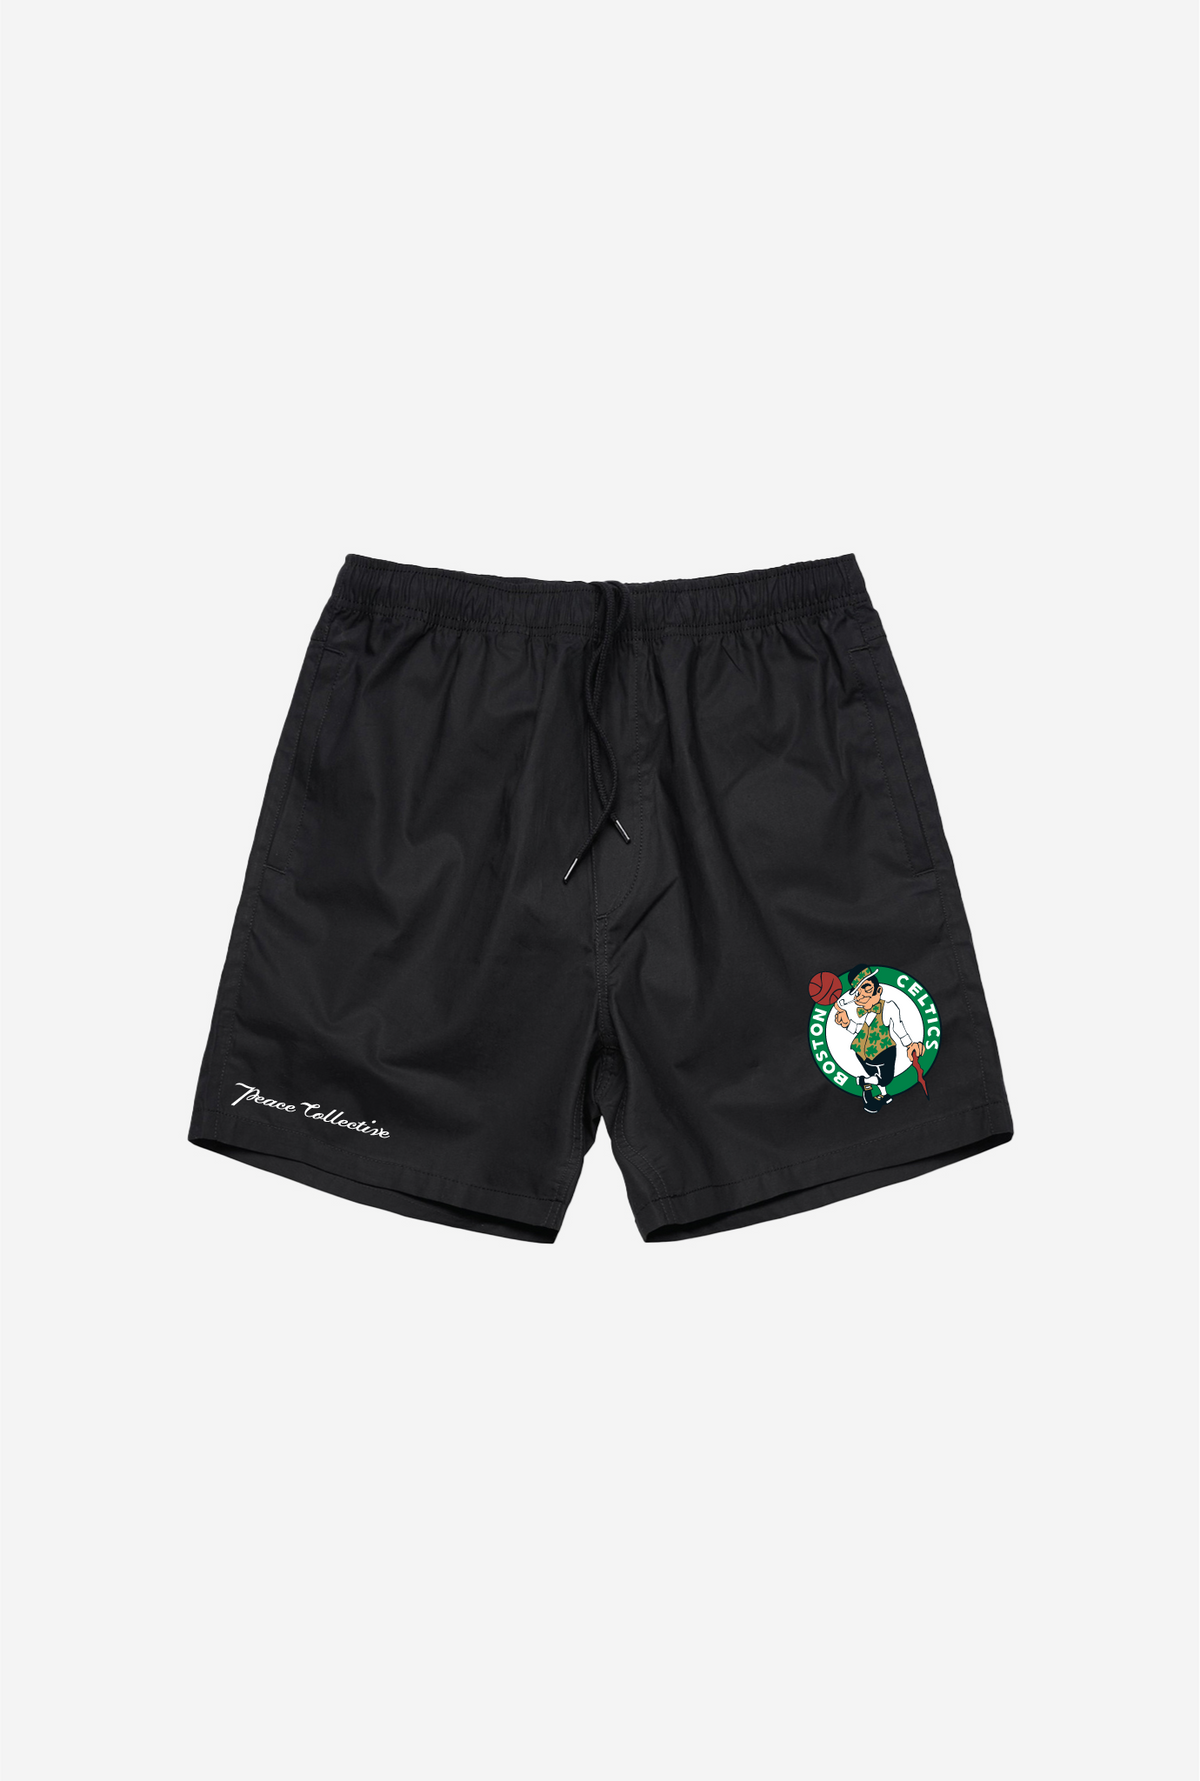 Boston Celtics Shorts - Black